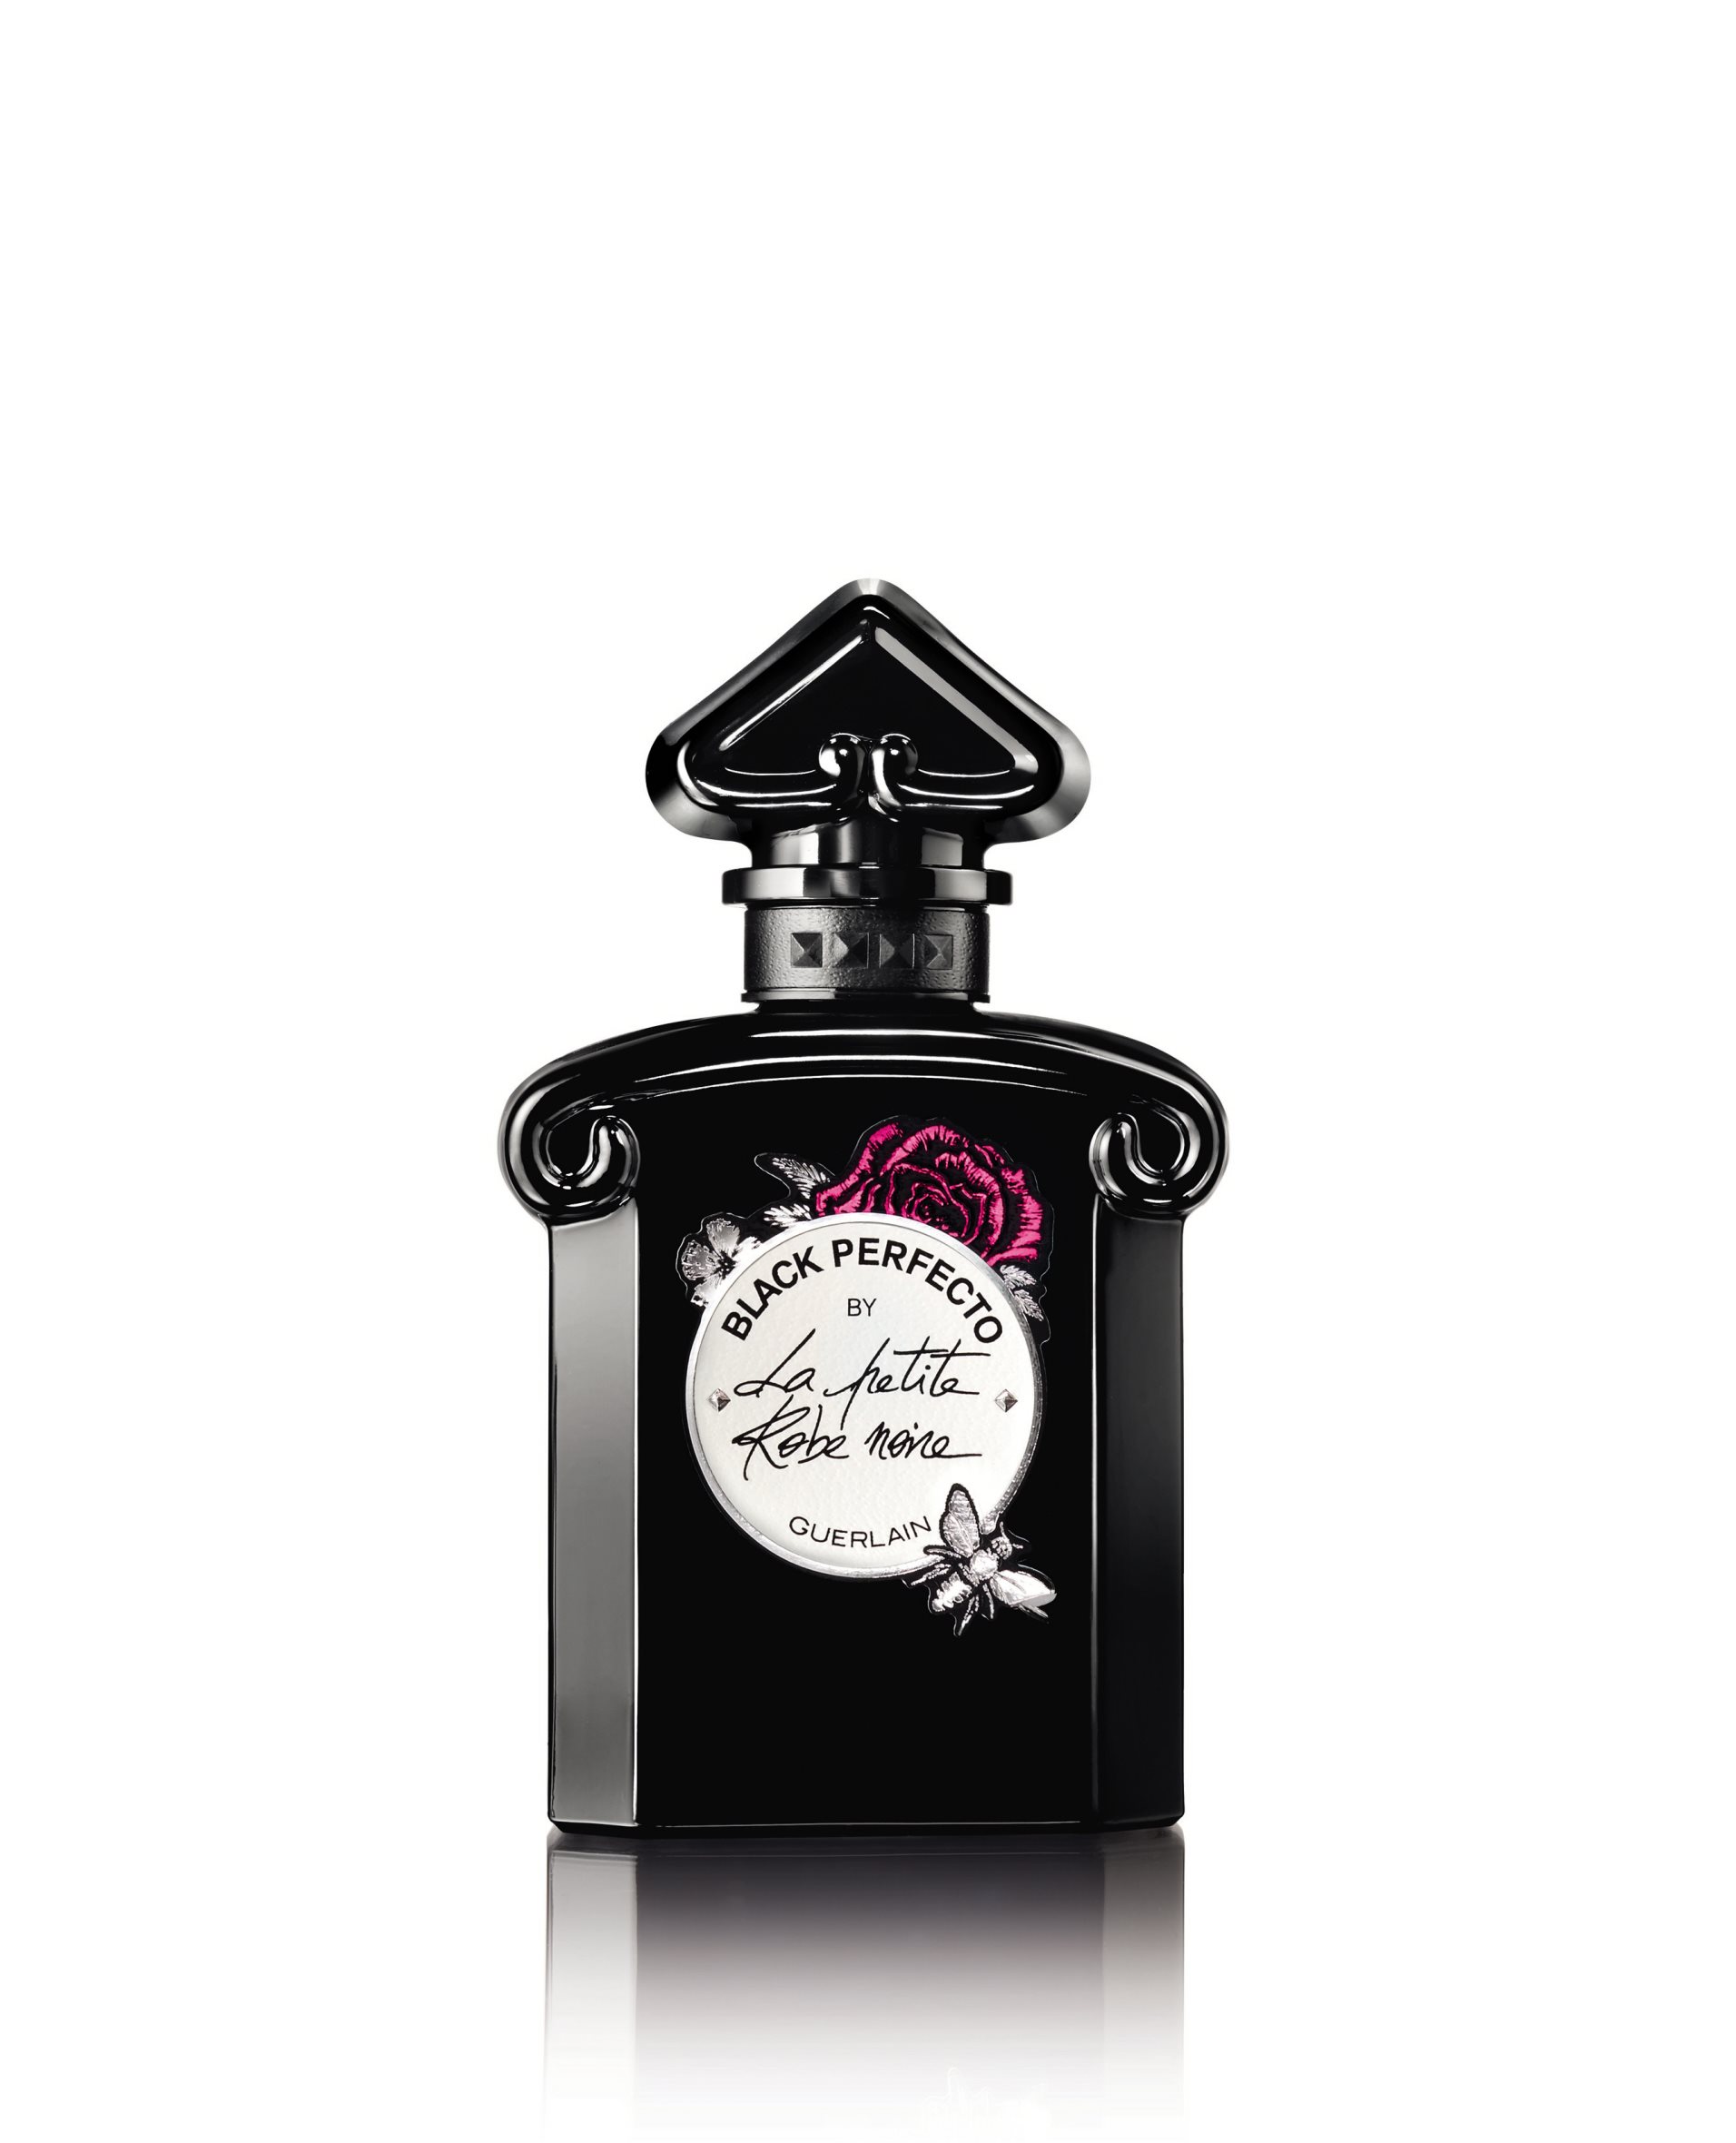 GUERLAIN Black Perfecto By La Petite Robe Noire Florale EdT